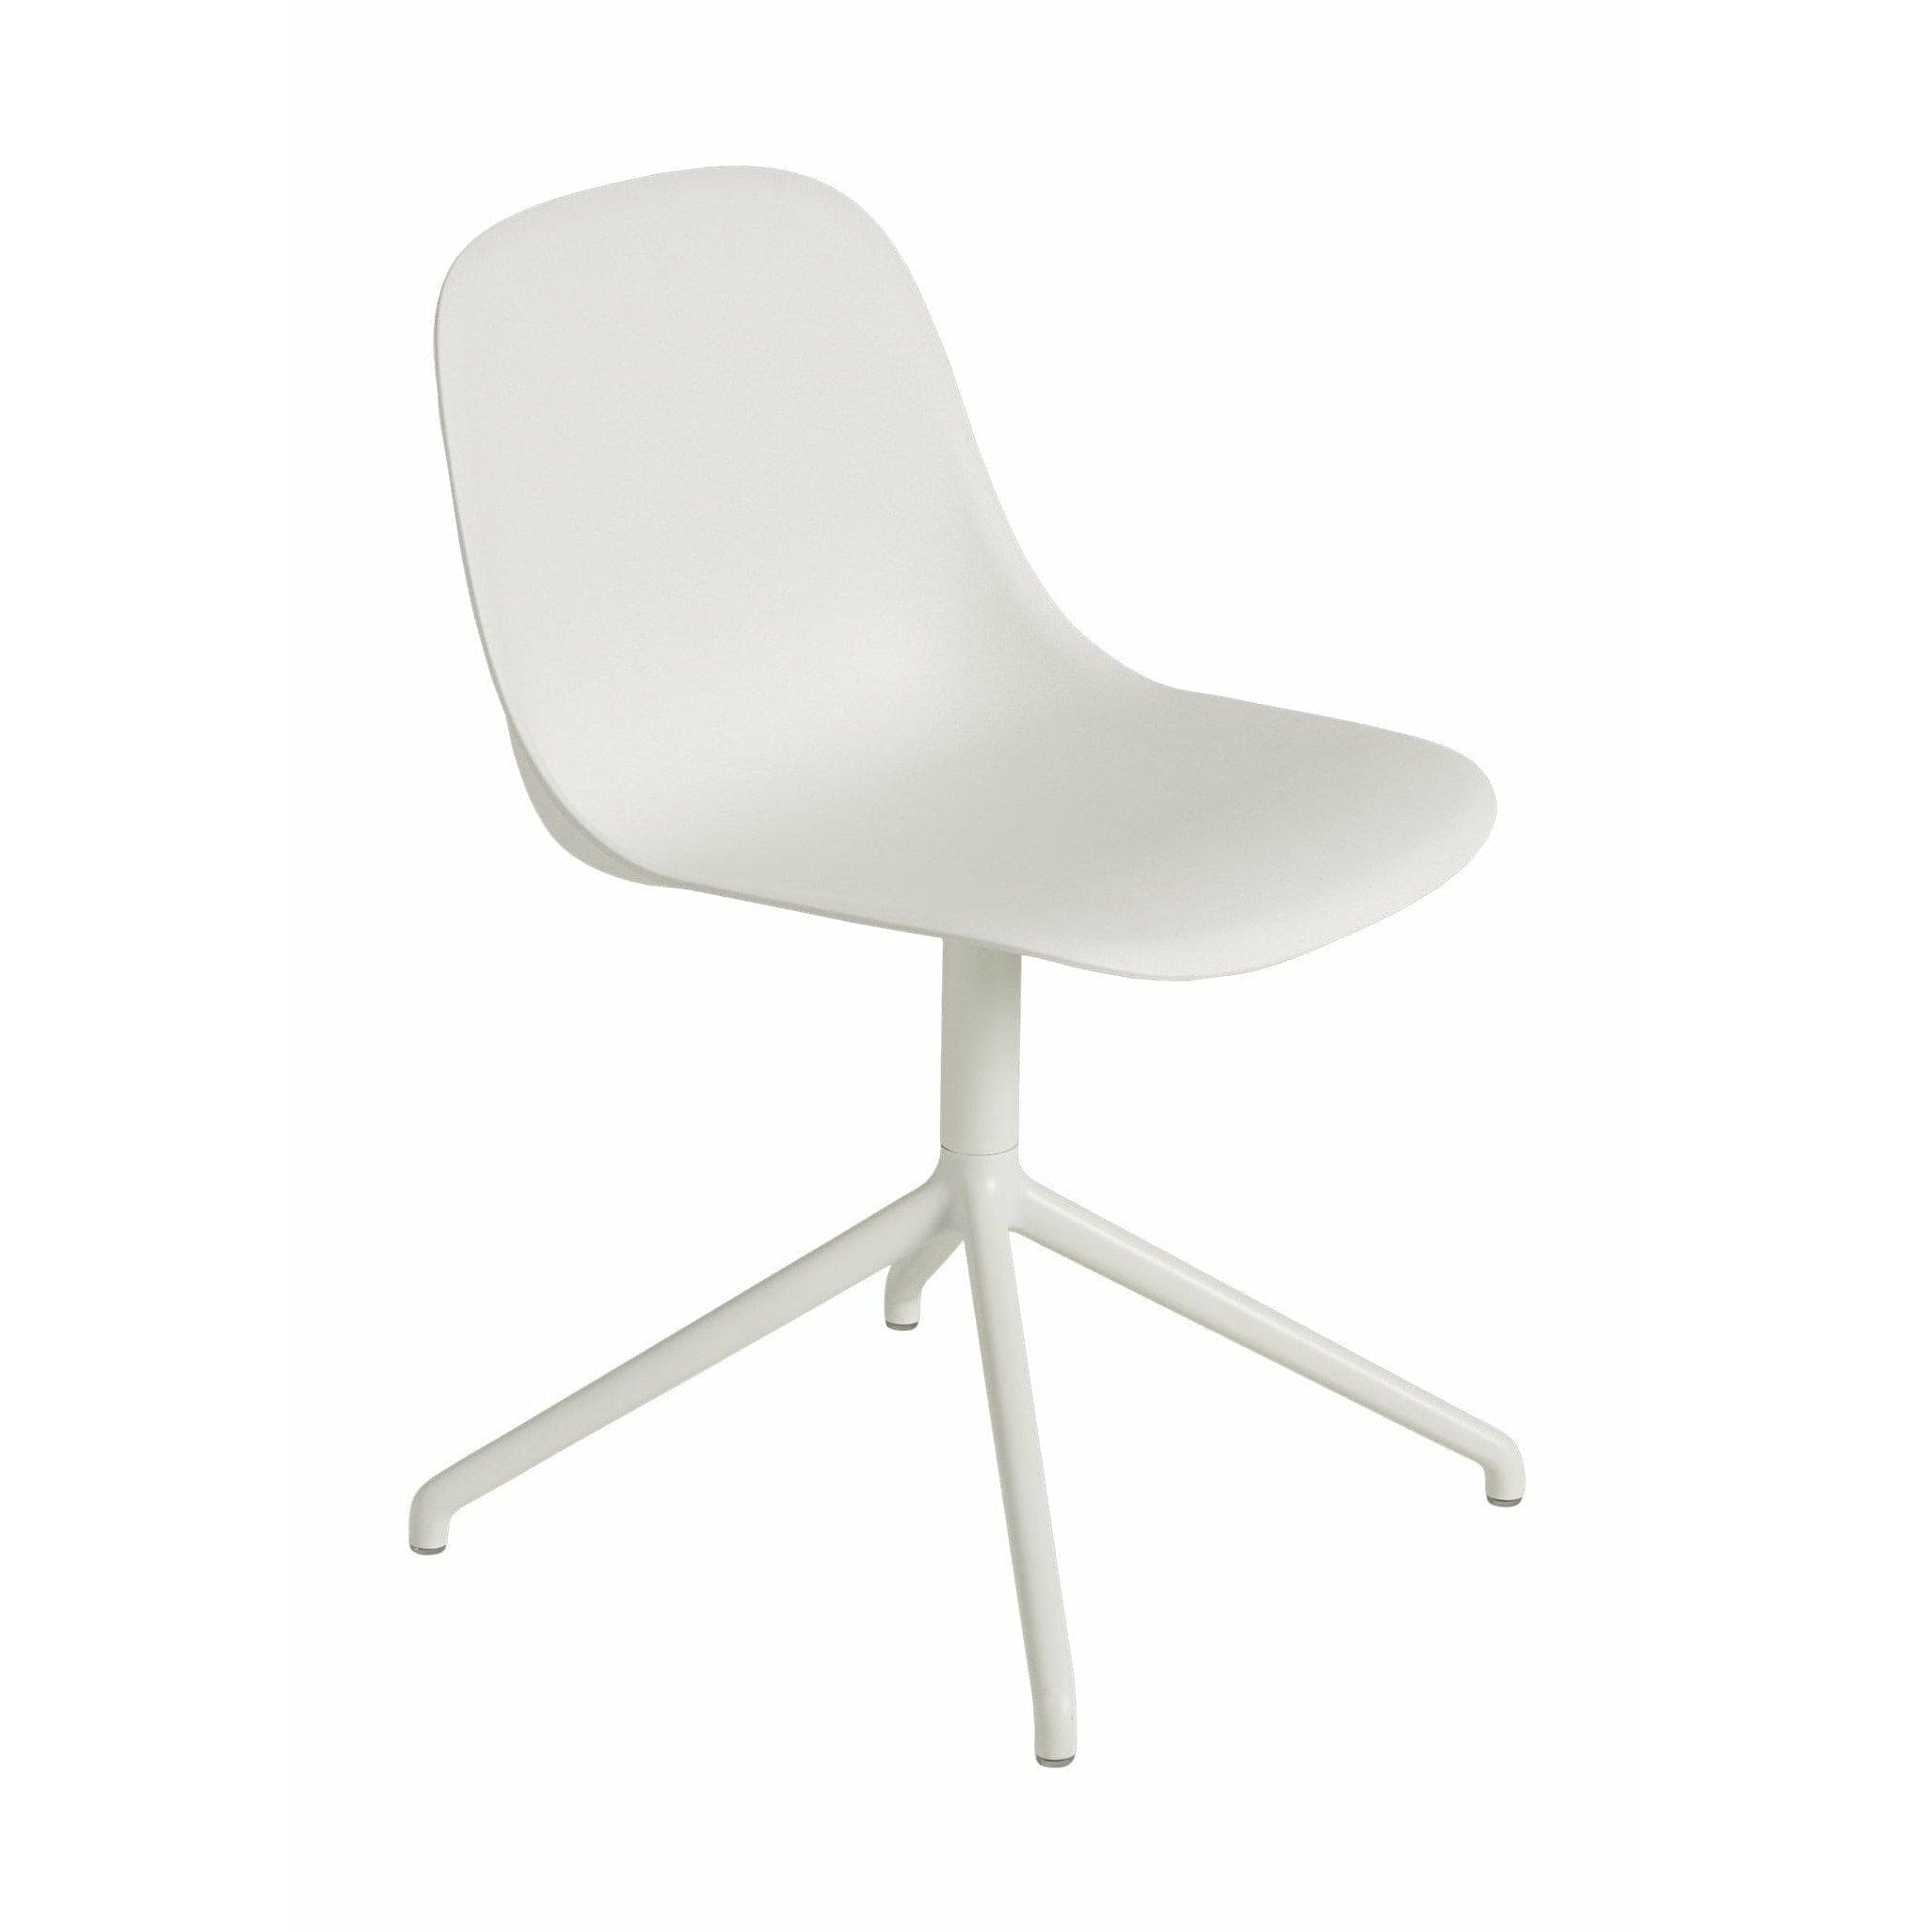 Muuto Kuitupuolen tuoli, joka on valmistettu kierrätetystä muovisesta käännöksestä, luonnollinen valkoinen/valkoinen